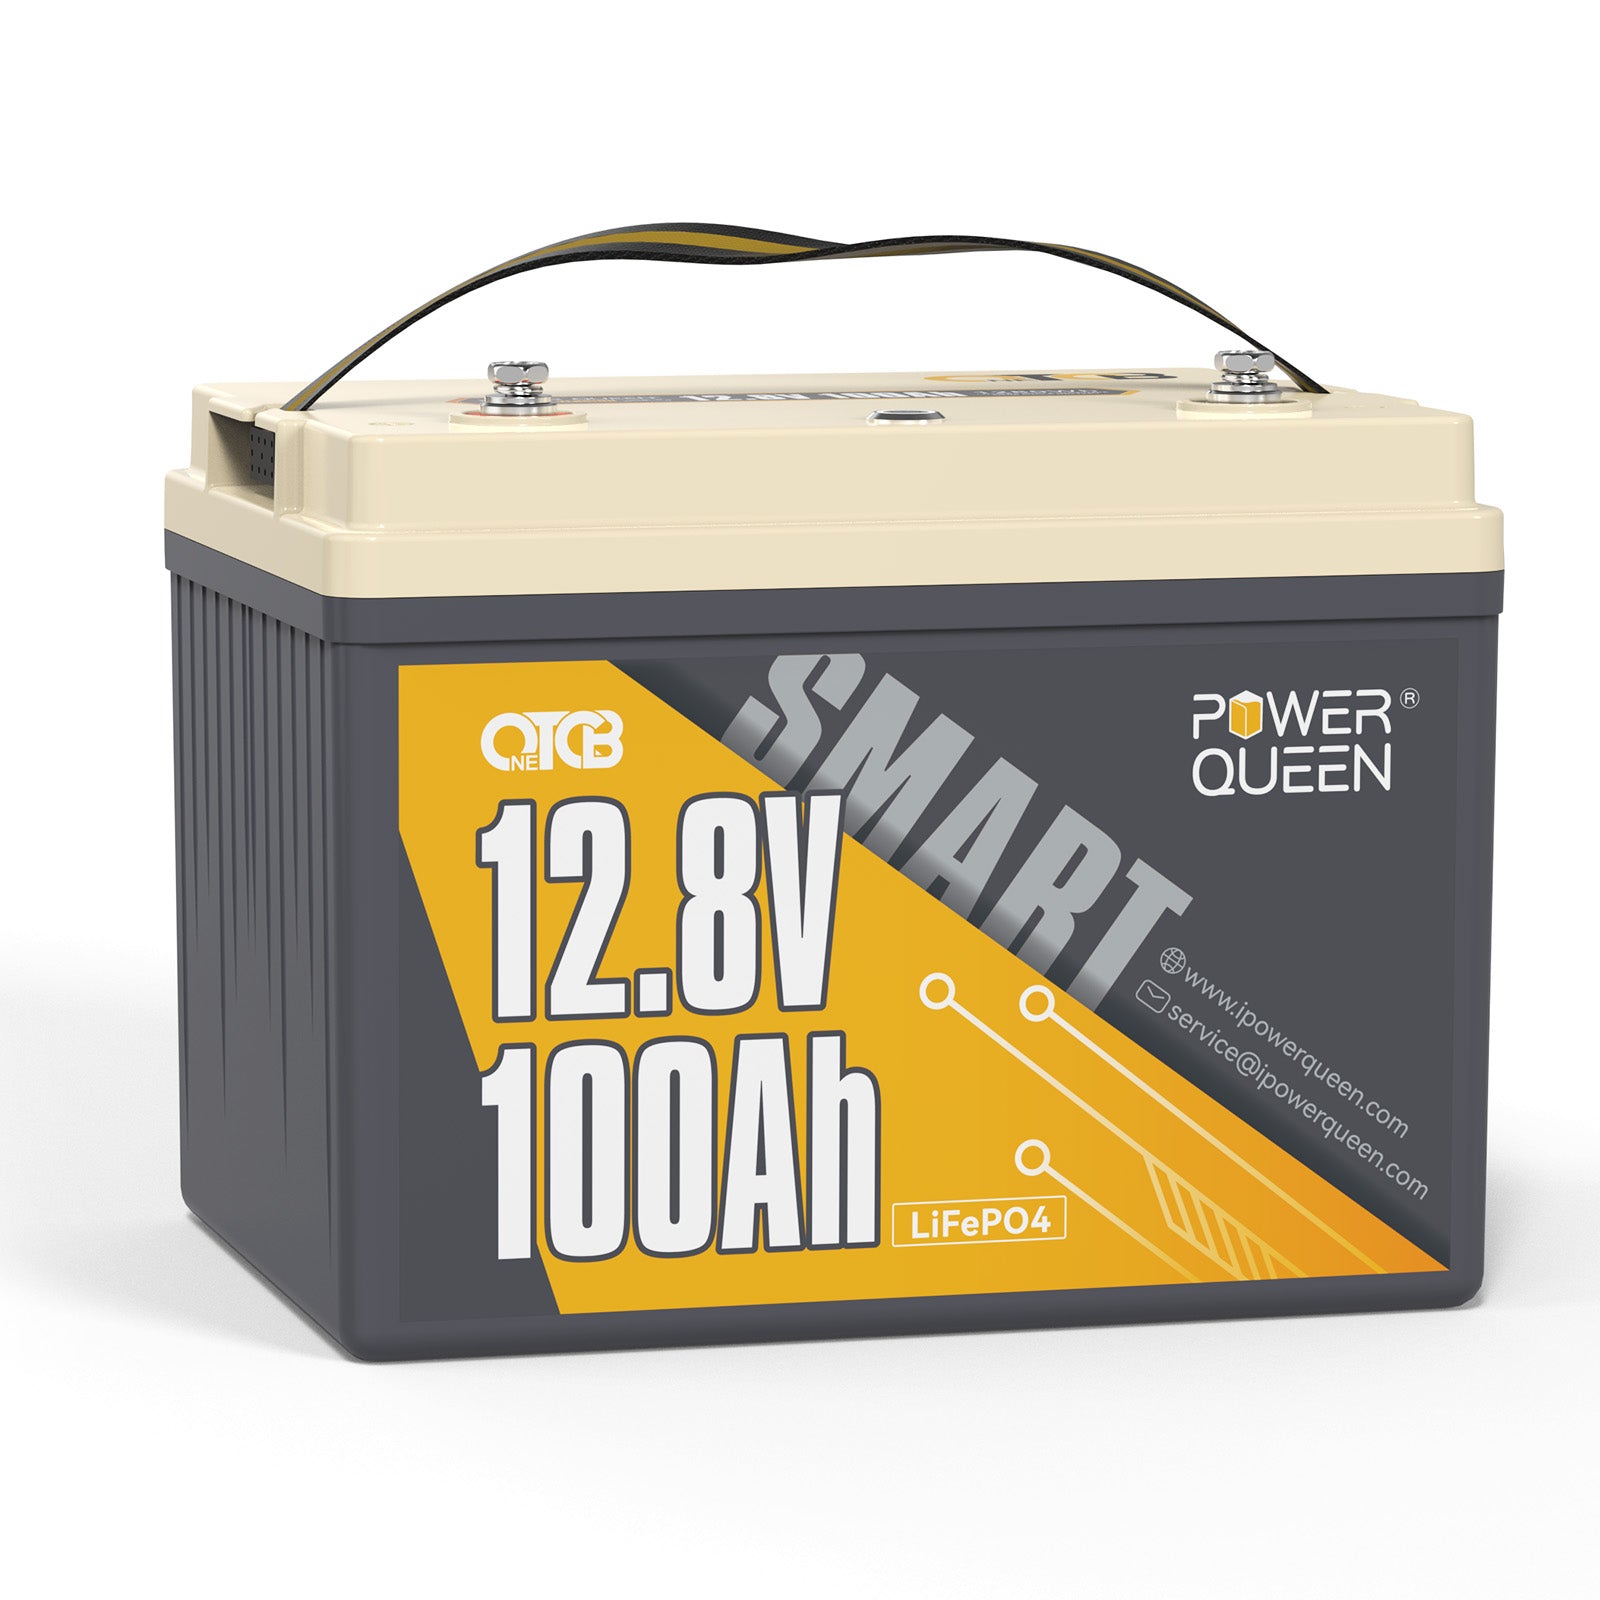 Batterie Power Queen 12V 100Ah basse température OTCB LiFePO4 avec BMS 100A intégré